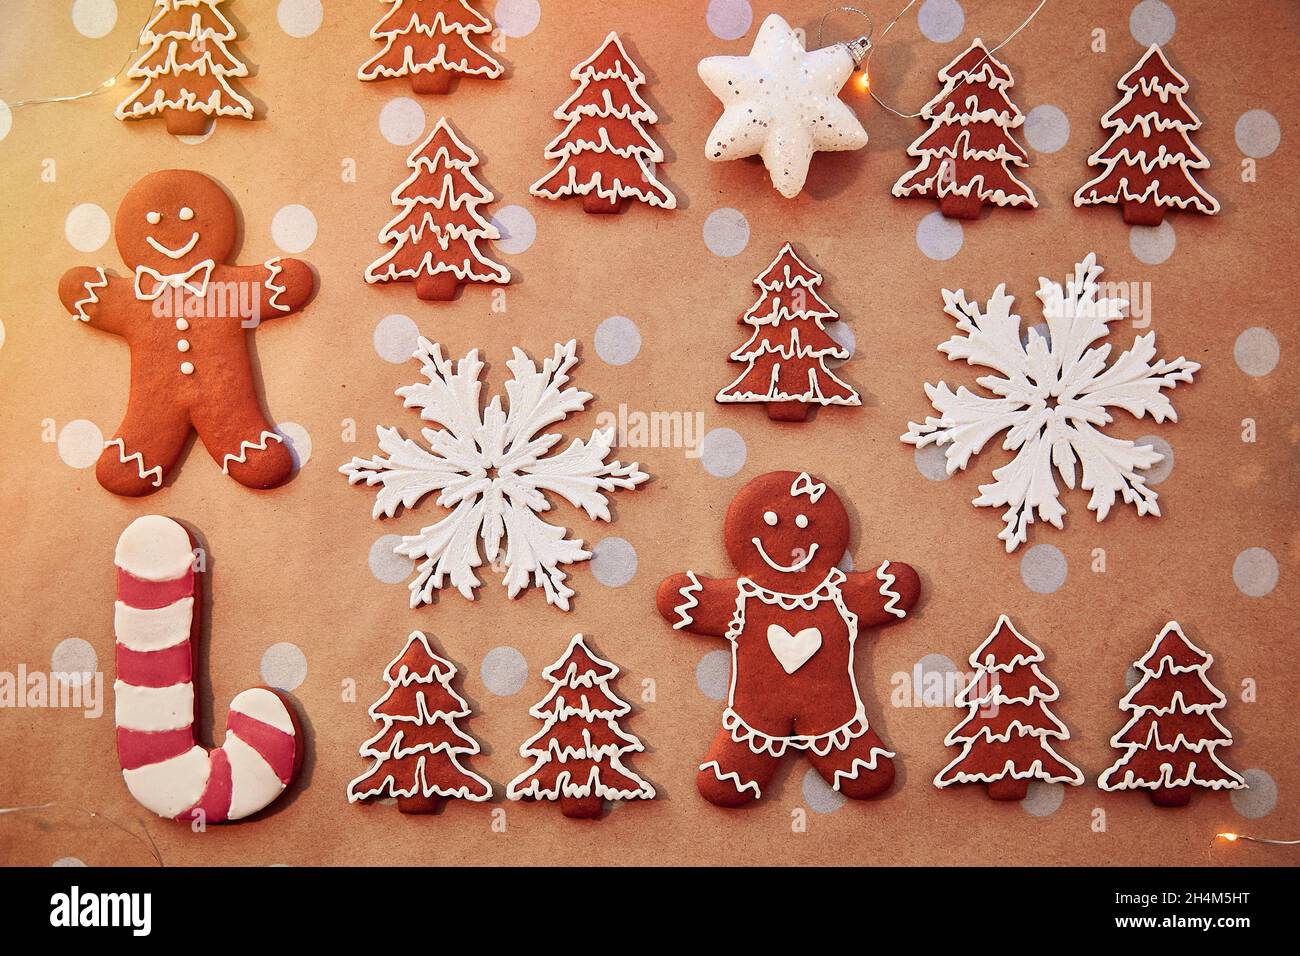 Mẫu bánh quy gừng handmade: Trong bộ sưu tập này, chắc chắn bạn sẽ tìm thấy mội mẫu bánh quy gừng handmade đầy sáng tạo để cảm nhận tinh thần Giáng sinh. Hãy lựa chọn món tráng miệng đặc biệt này cho các buổi liên hoan và chắc chắn sẽ có được những tràng cười vui tươi.